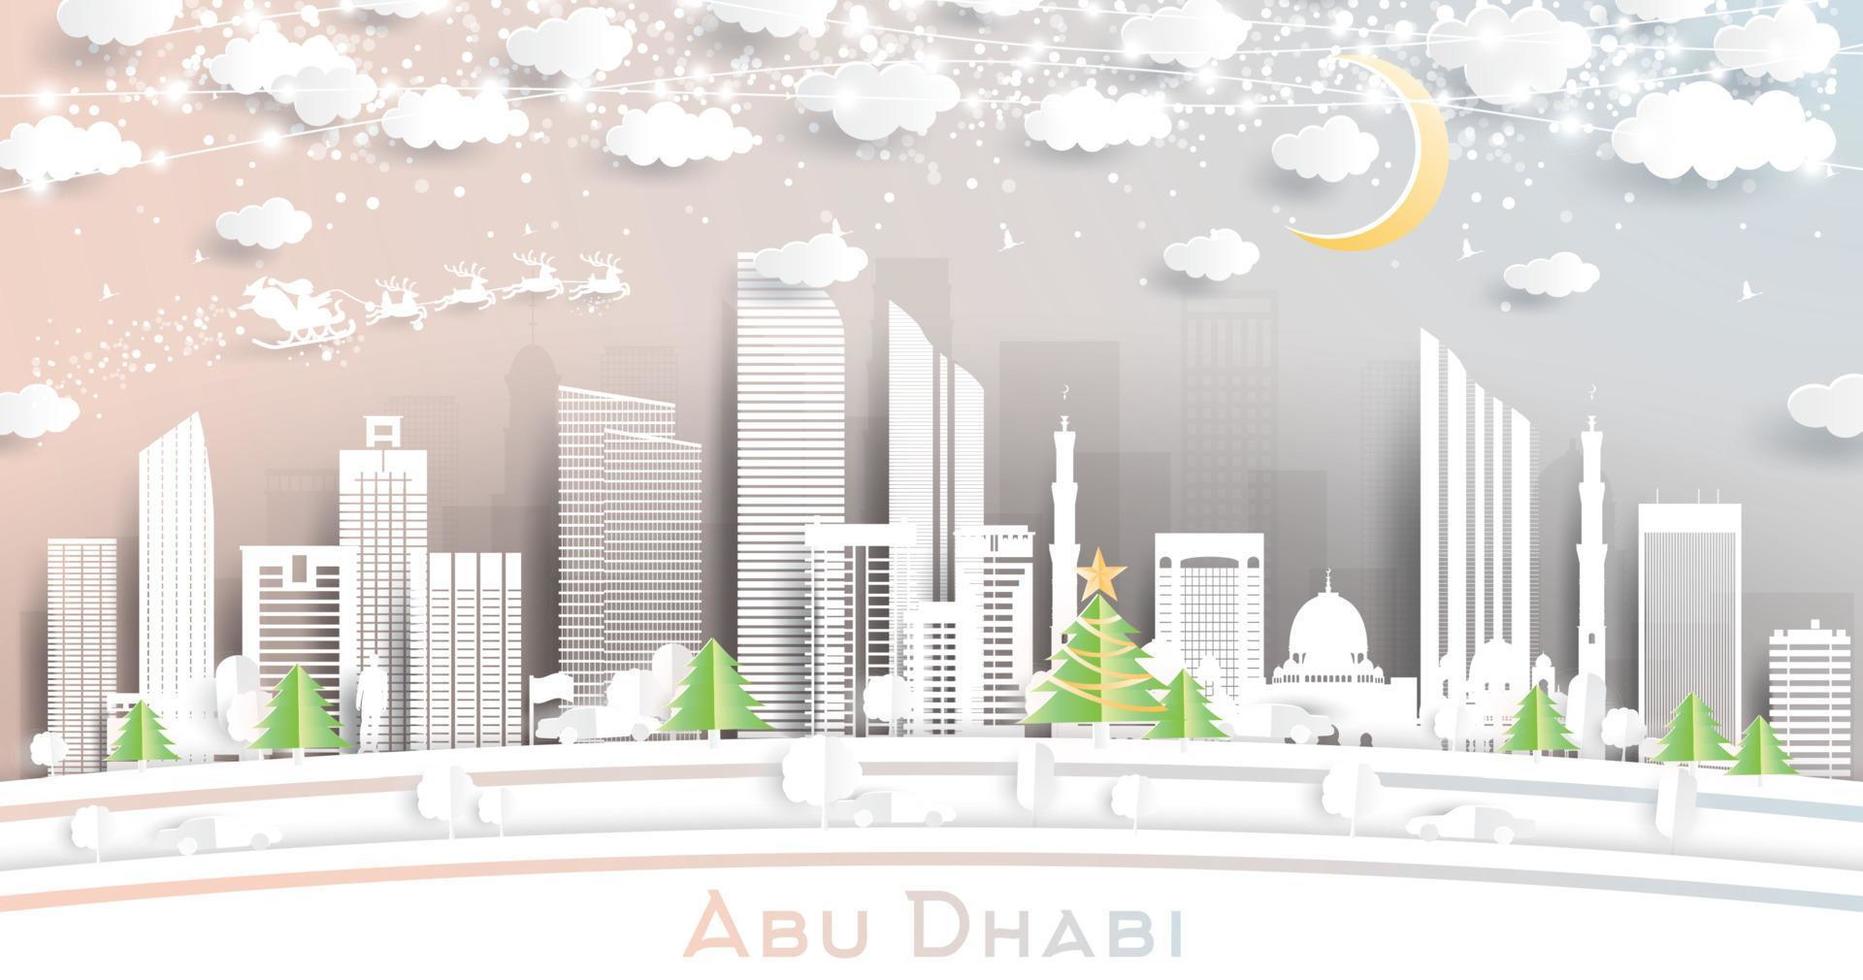 el horizonte de la ciudad de los emiratos árabes unidos de abu dhabi en estilo de corte de papel con copos de nieve, luna y guirnaldas de neón. vector